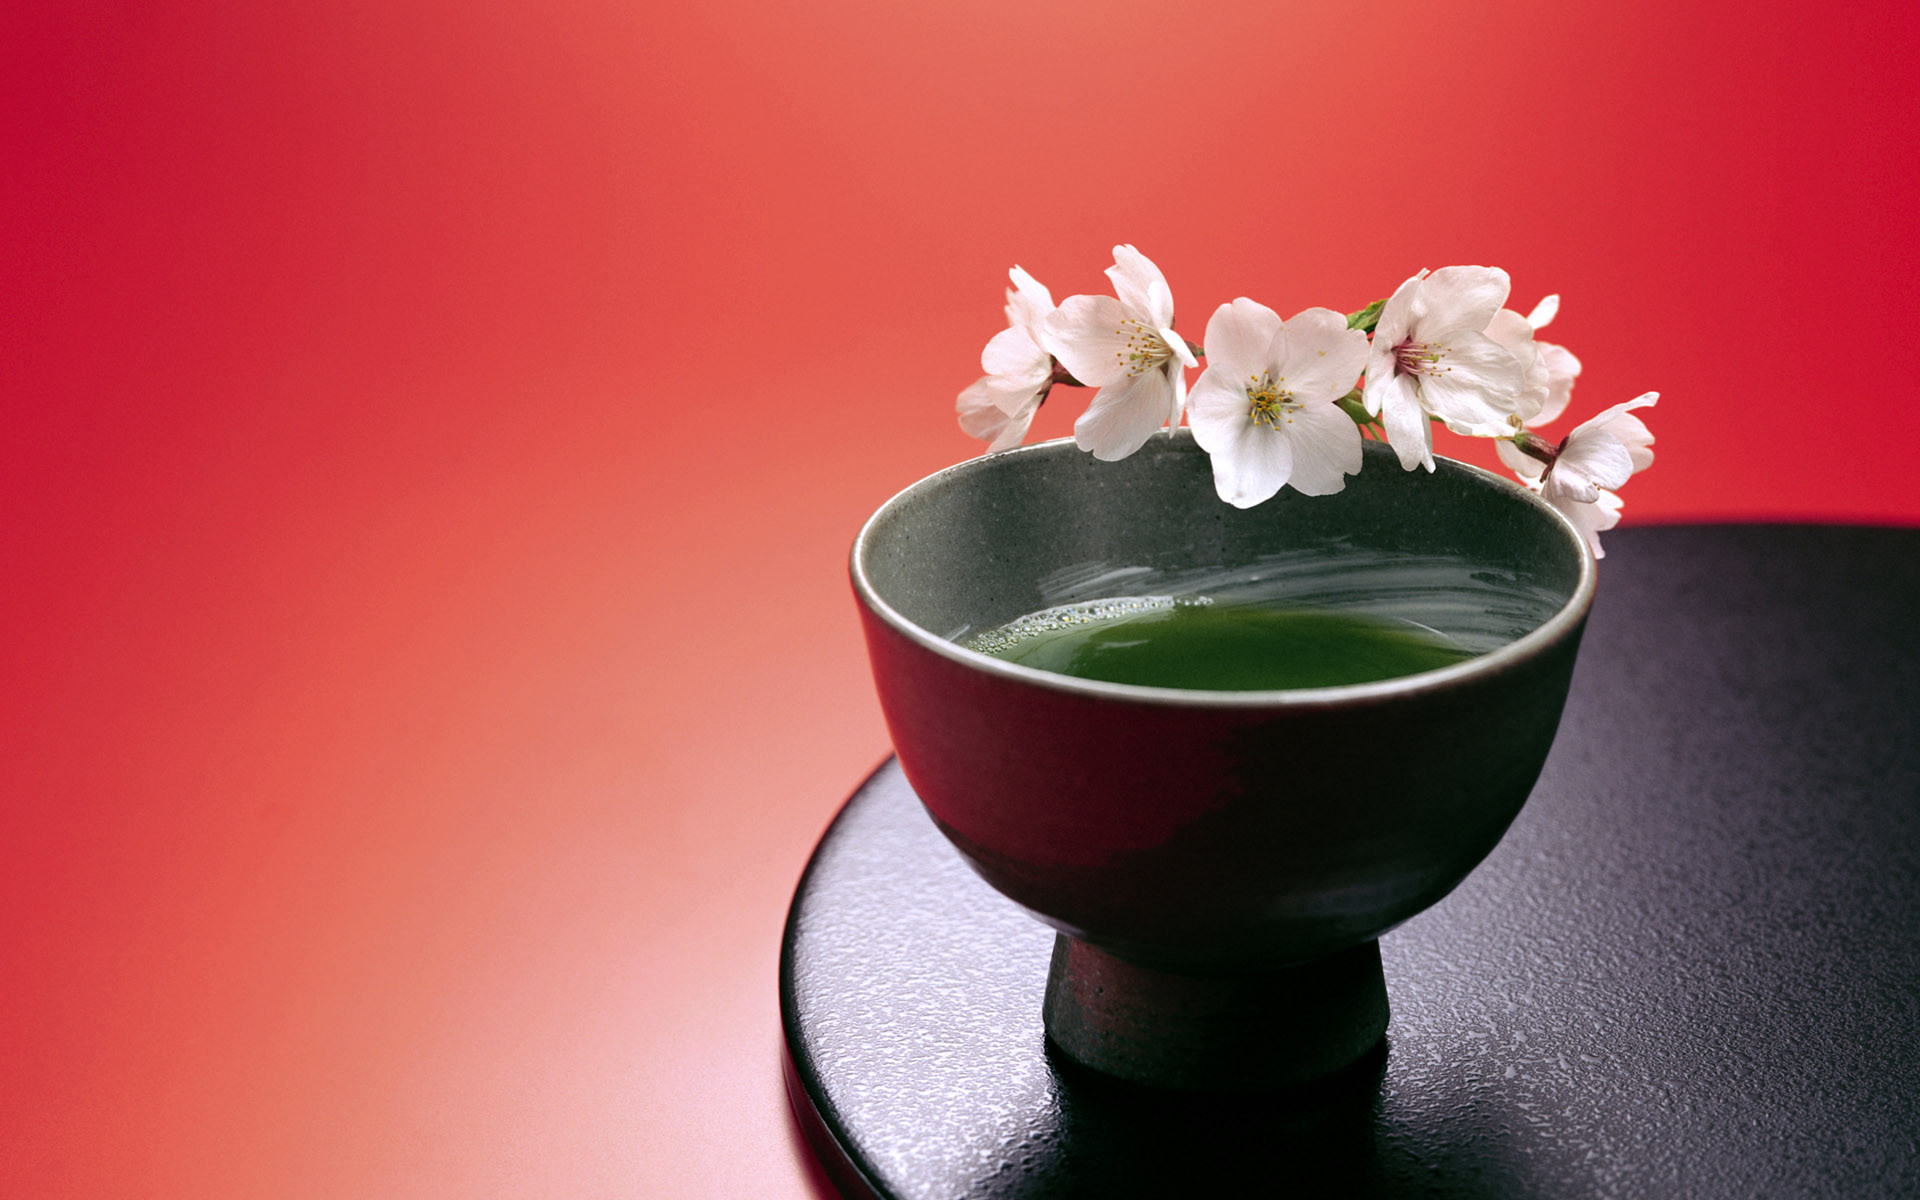 茶 道を楽しみ、たしなみ 『日本の美』を身近に 感じてみませんか。